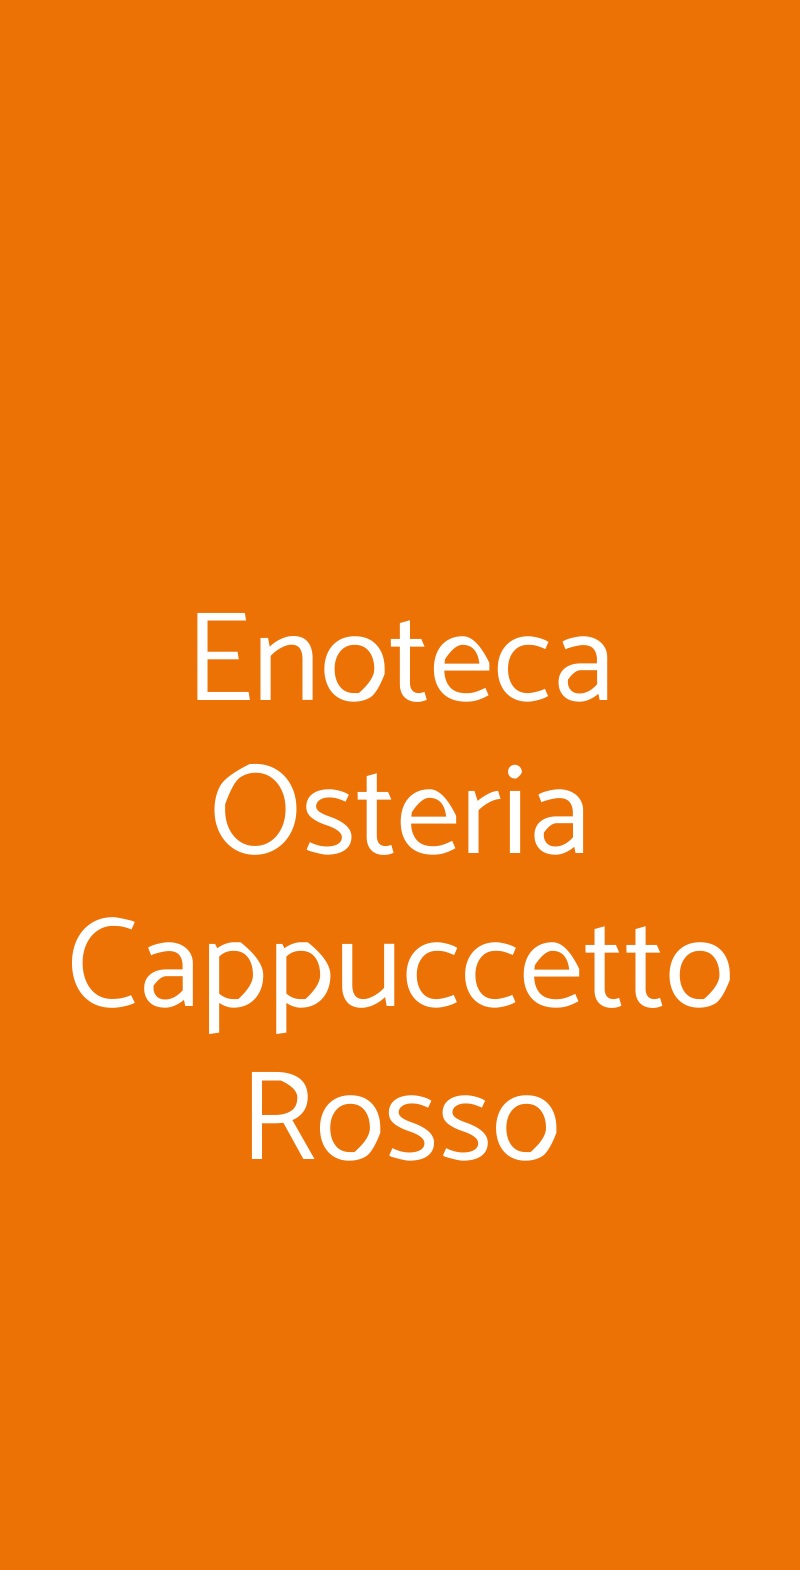 Enoteca Osteria Cappuccetto Rosso Borgo a Mozzano menù 1 pagina